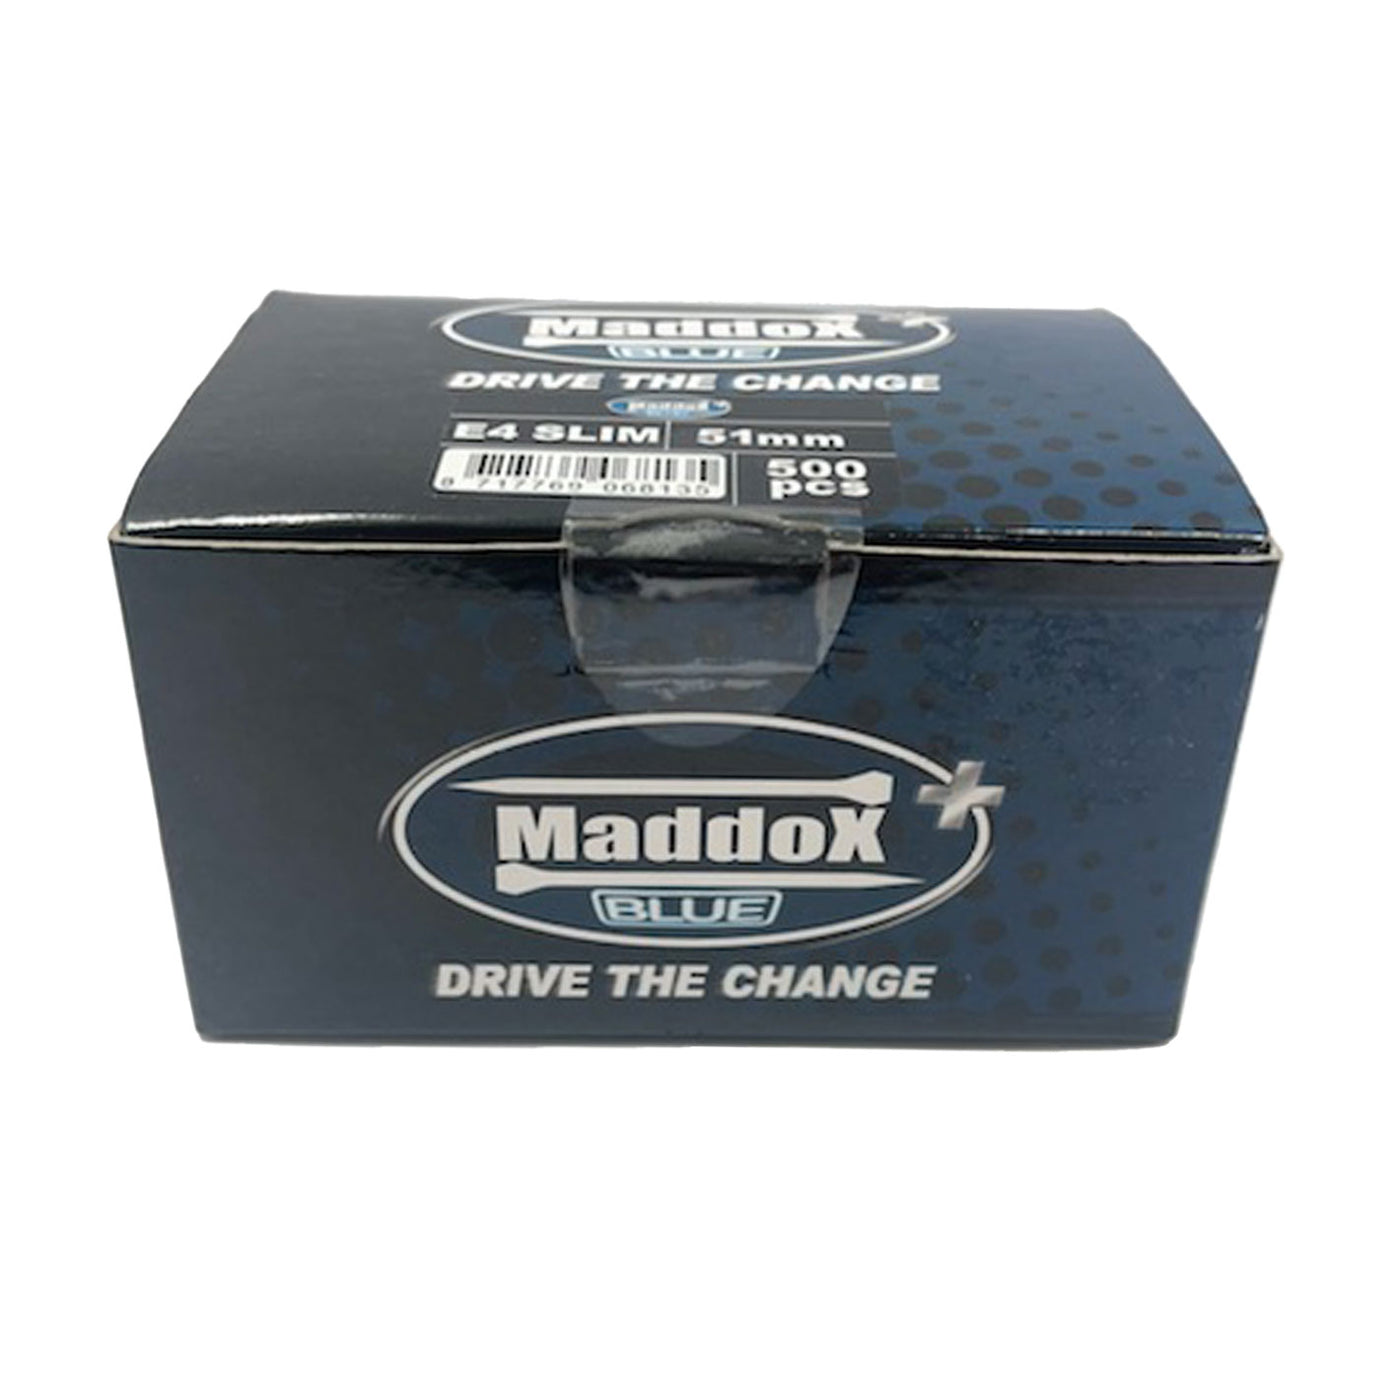 Maddox Blue ESL4 500pcs